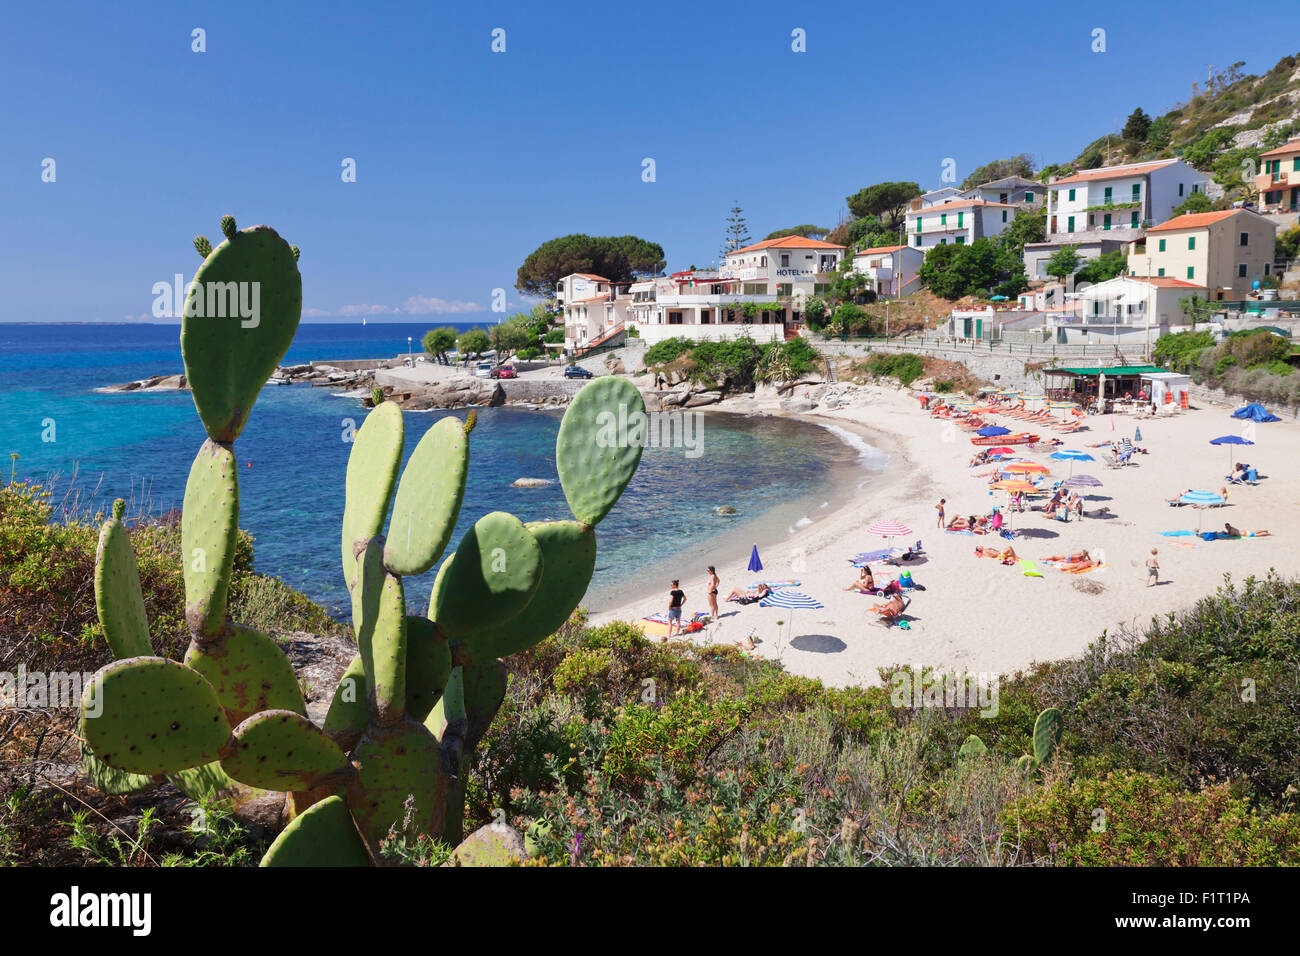 Beach of Seccheto, Island of Elba, Livorno Province, Tuscany, Italy, Europe Stock Photo